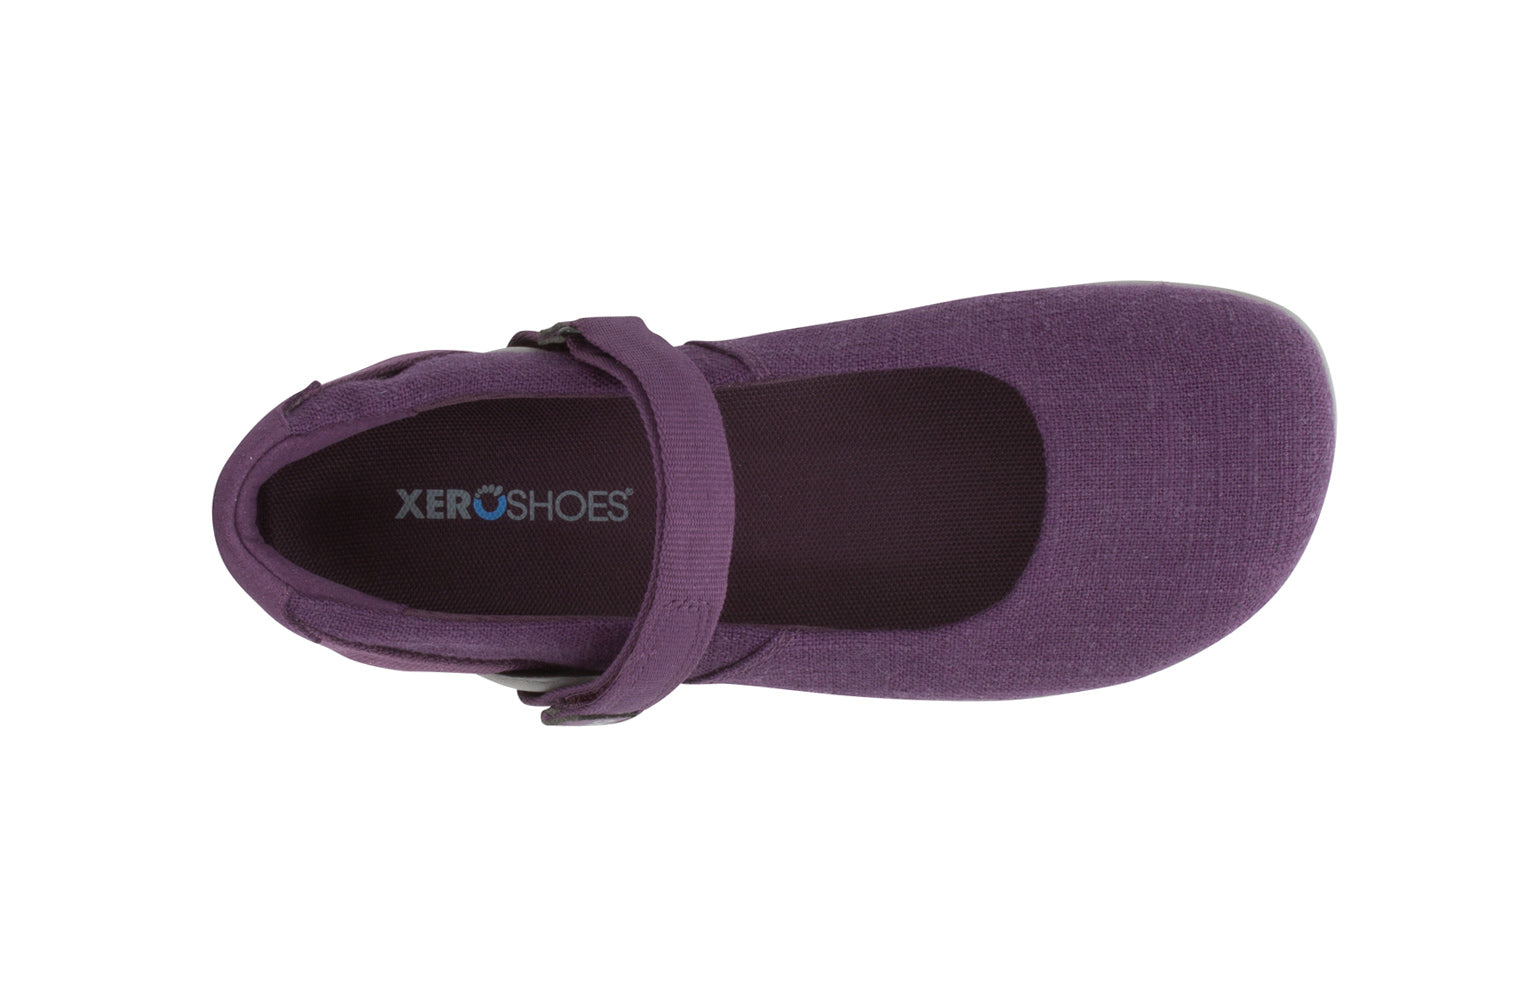 Xero Shoes Cassie Womens barfods ballerinaer til kvinder i farven blackberry, top